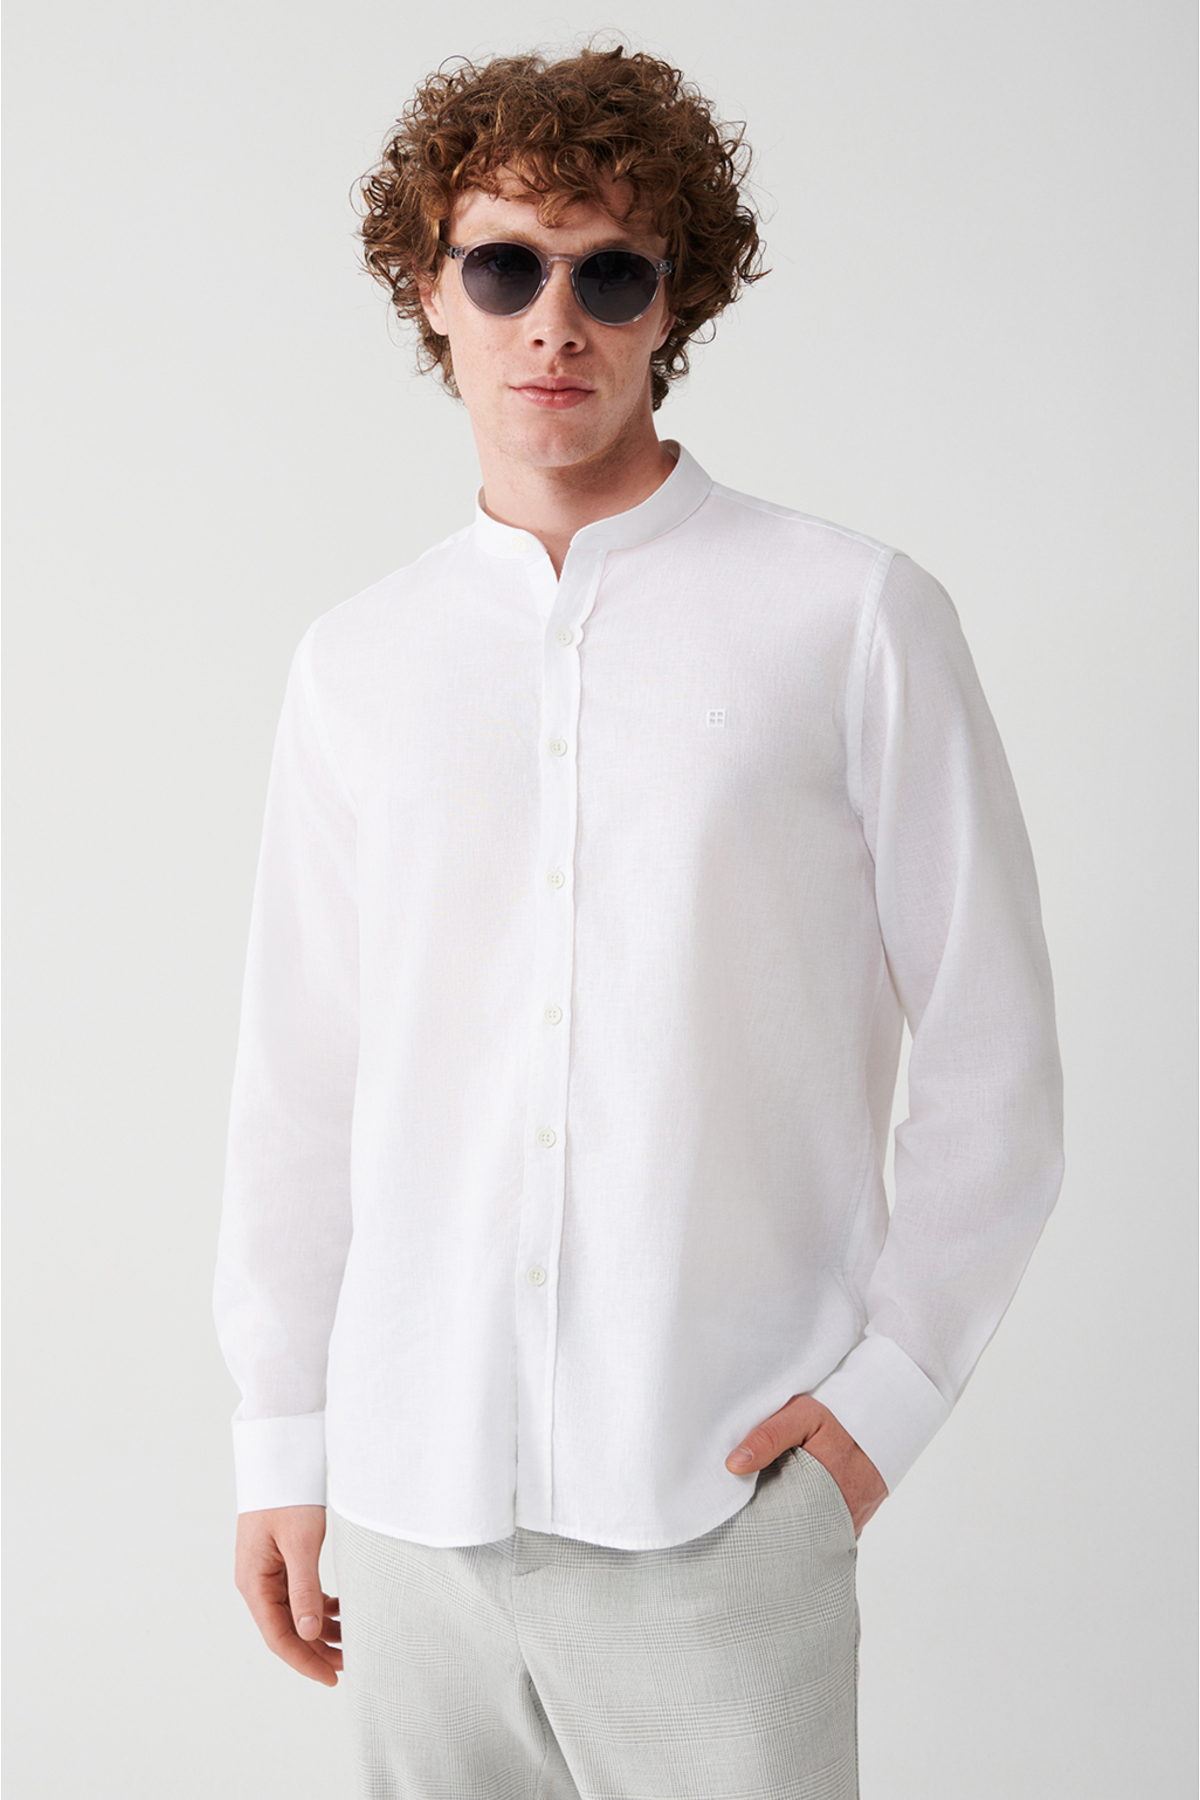 Avva Men's White Large Collar Linen Blended Regular Fit Shirt